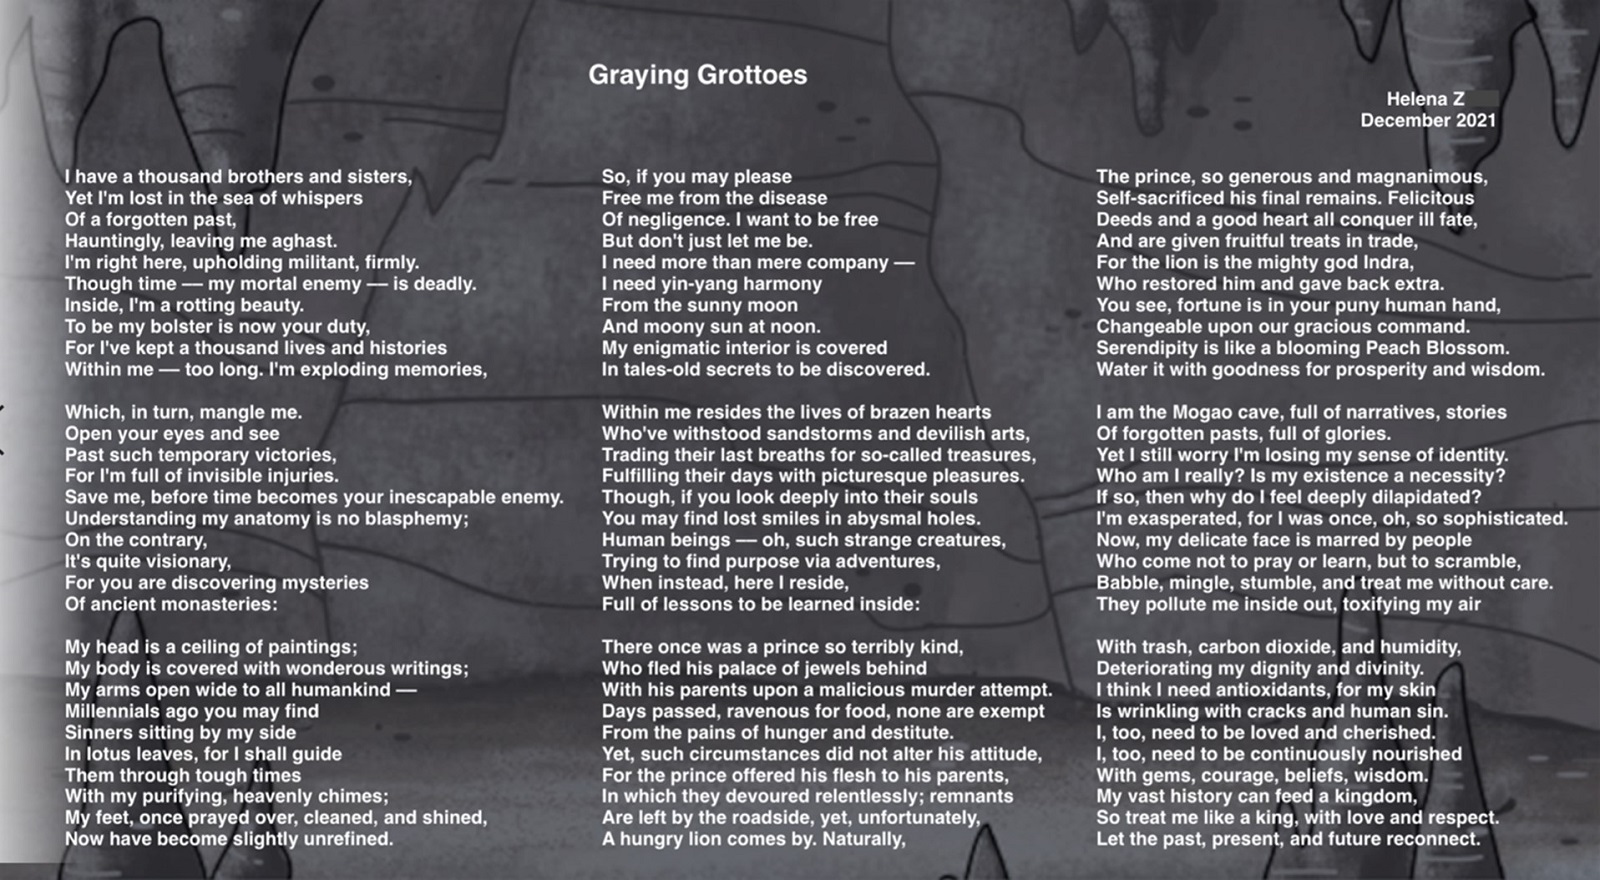 Helena的诗歌作品Graying Grottoes